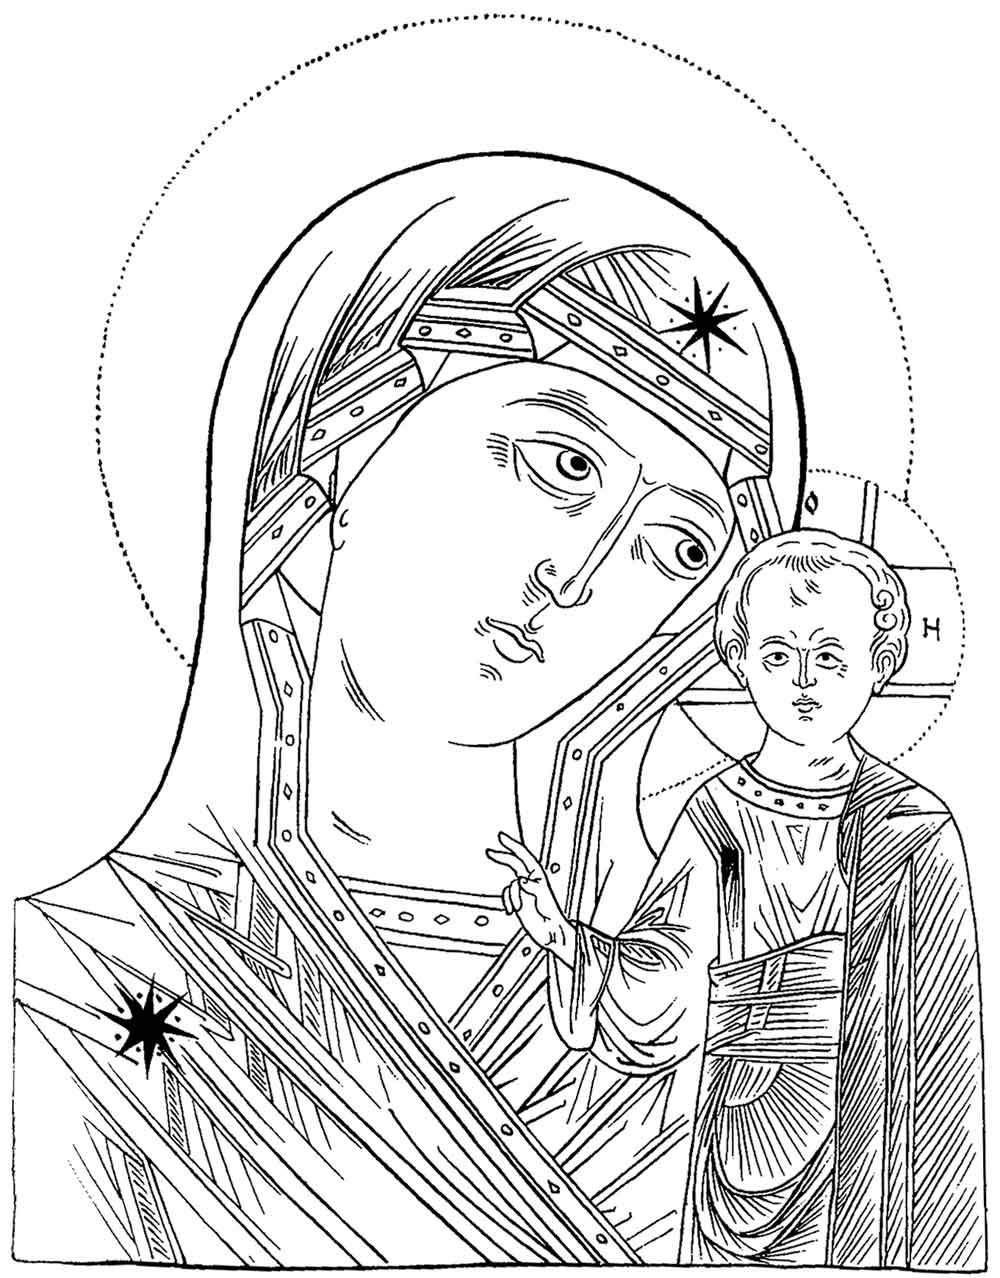 Проресь Казанской иконы Божьей матери